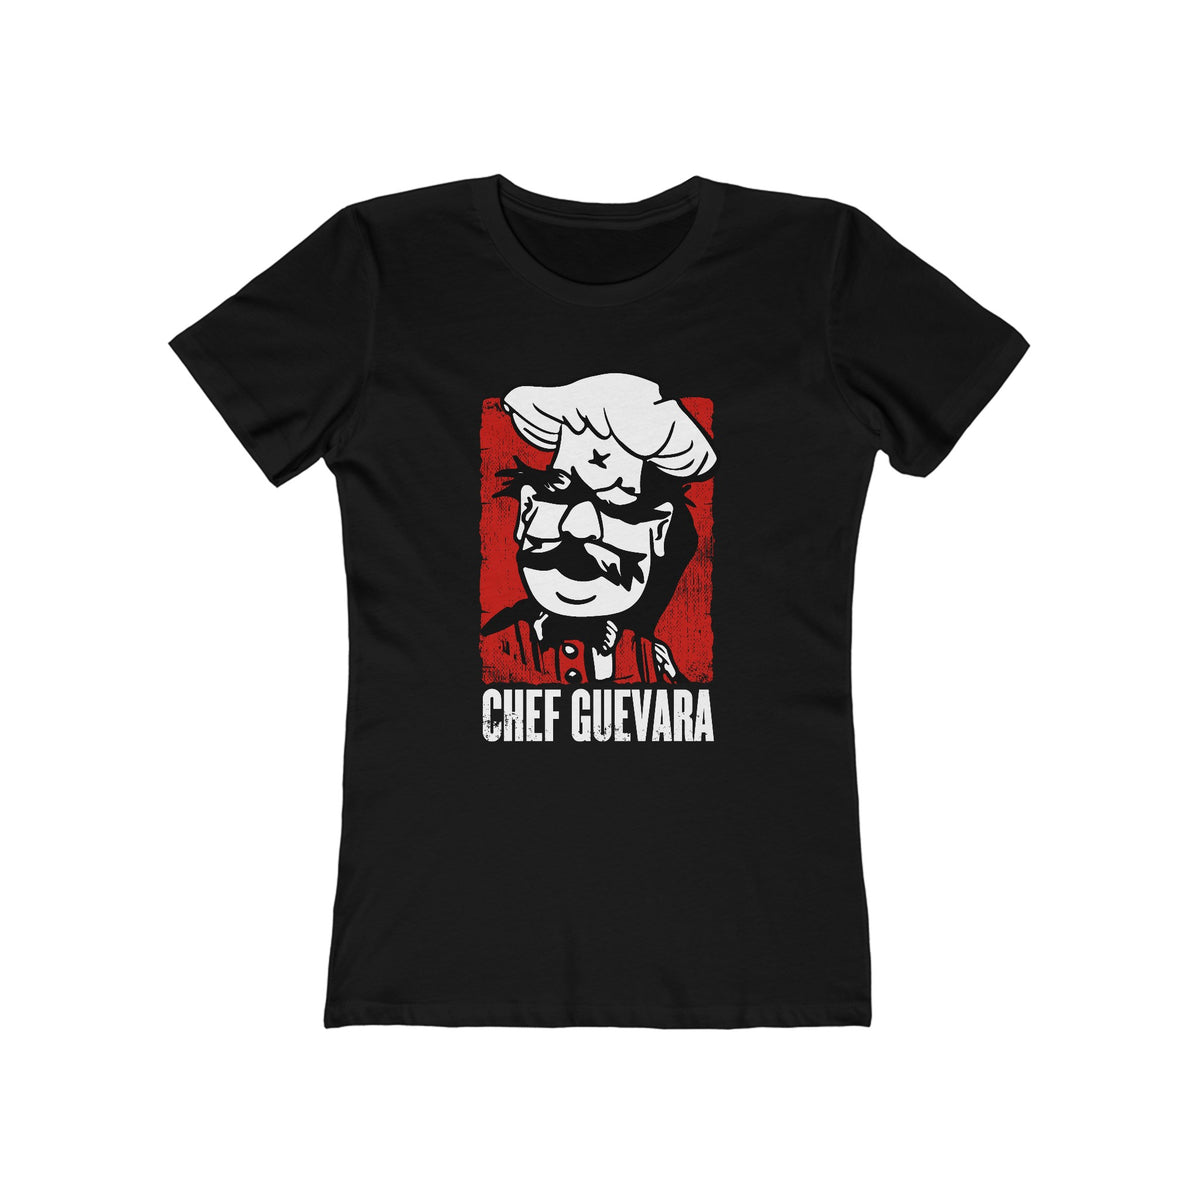 Chef Guevara - Women’s T-Shirt